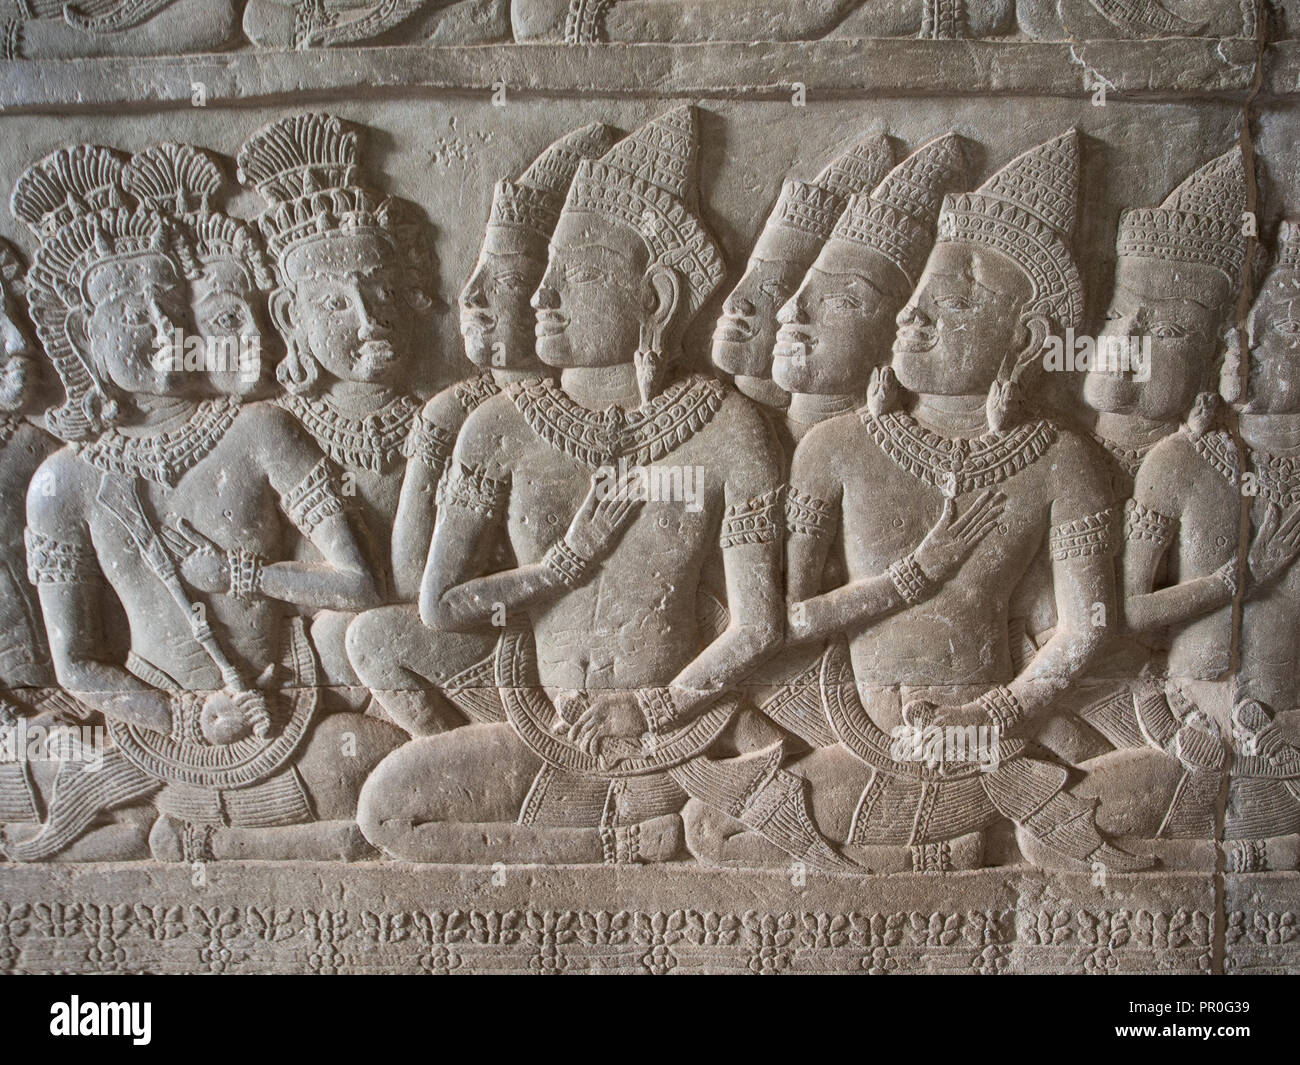 La sculpture murale, Angkor Wat, Site du patrimoine mondial de l'UNESCO, près de Siem Reap, Cambodge, Indochine, Asie du Sud-Est, l'Asie Banque D'Images